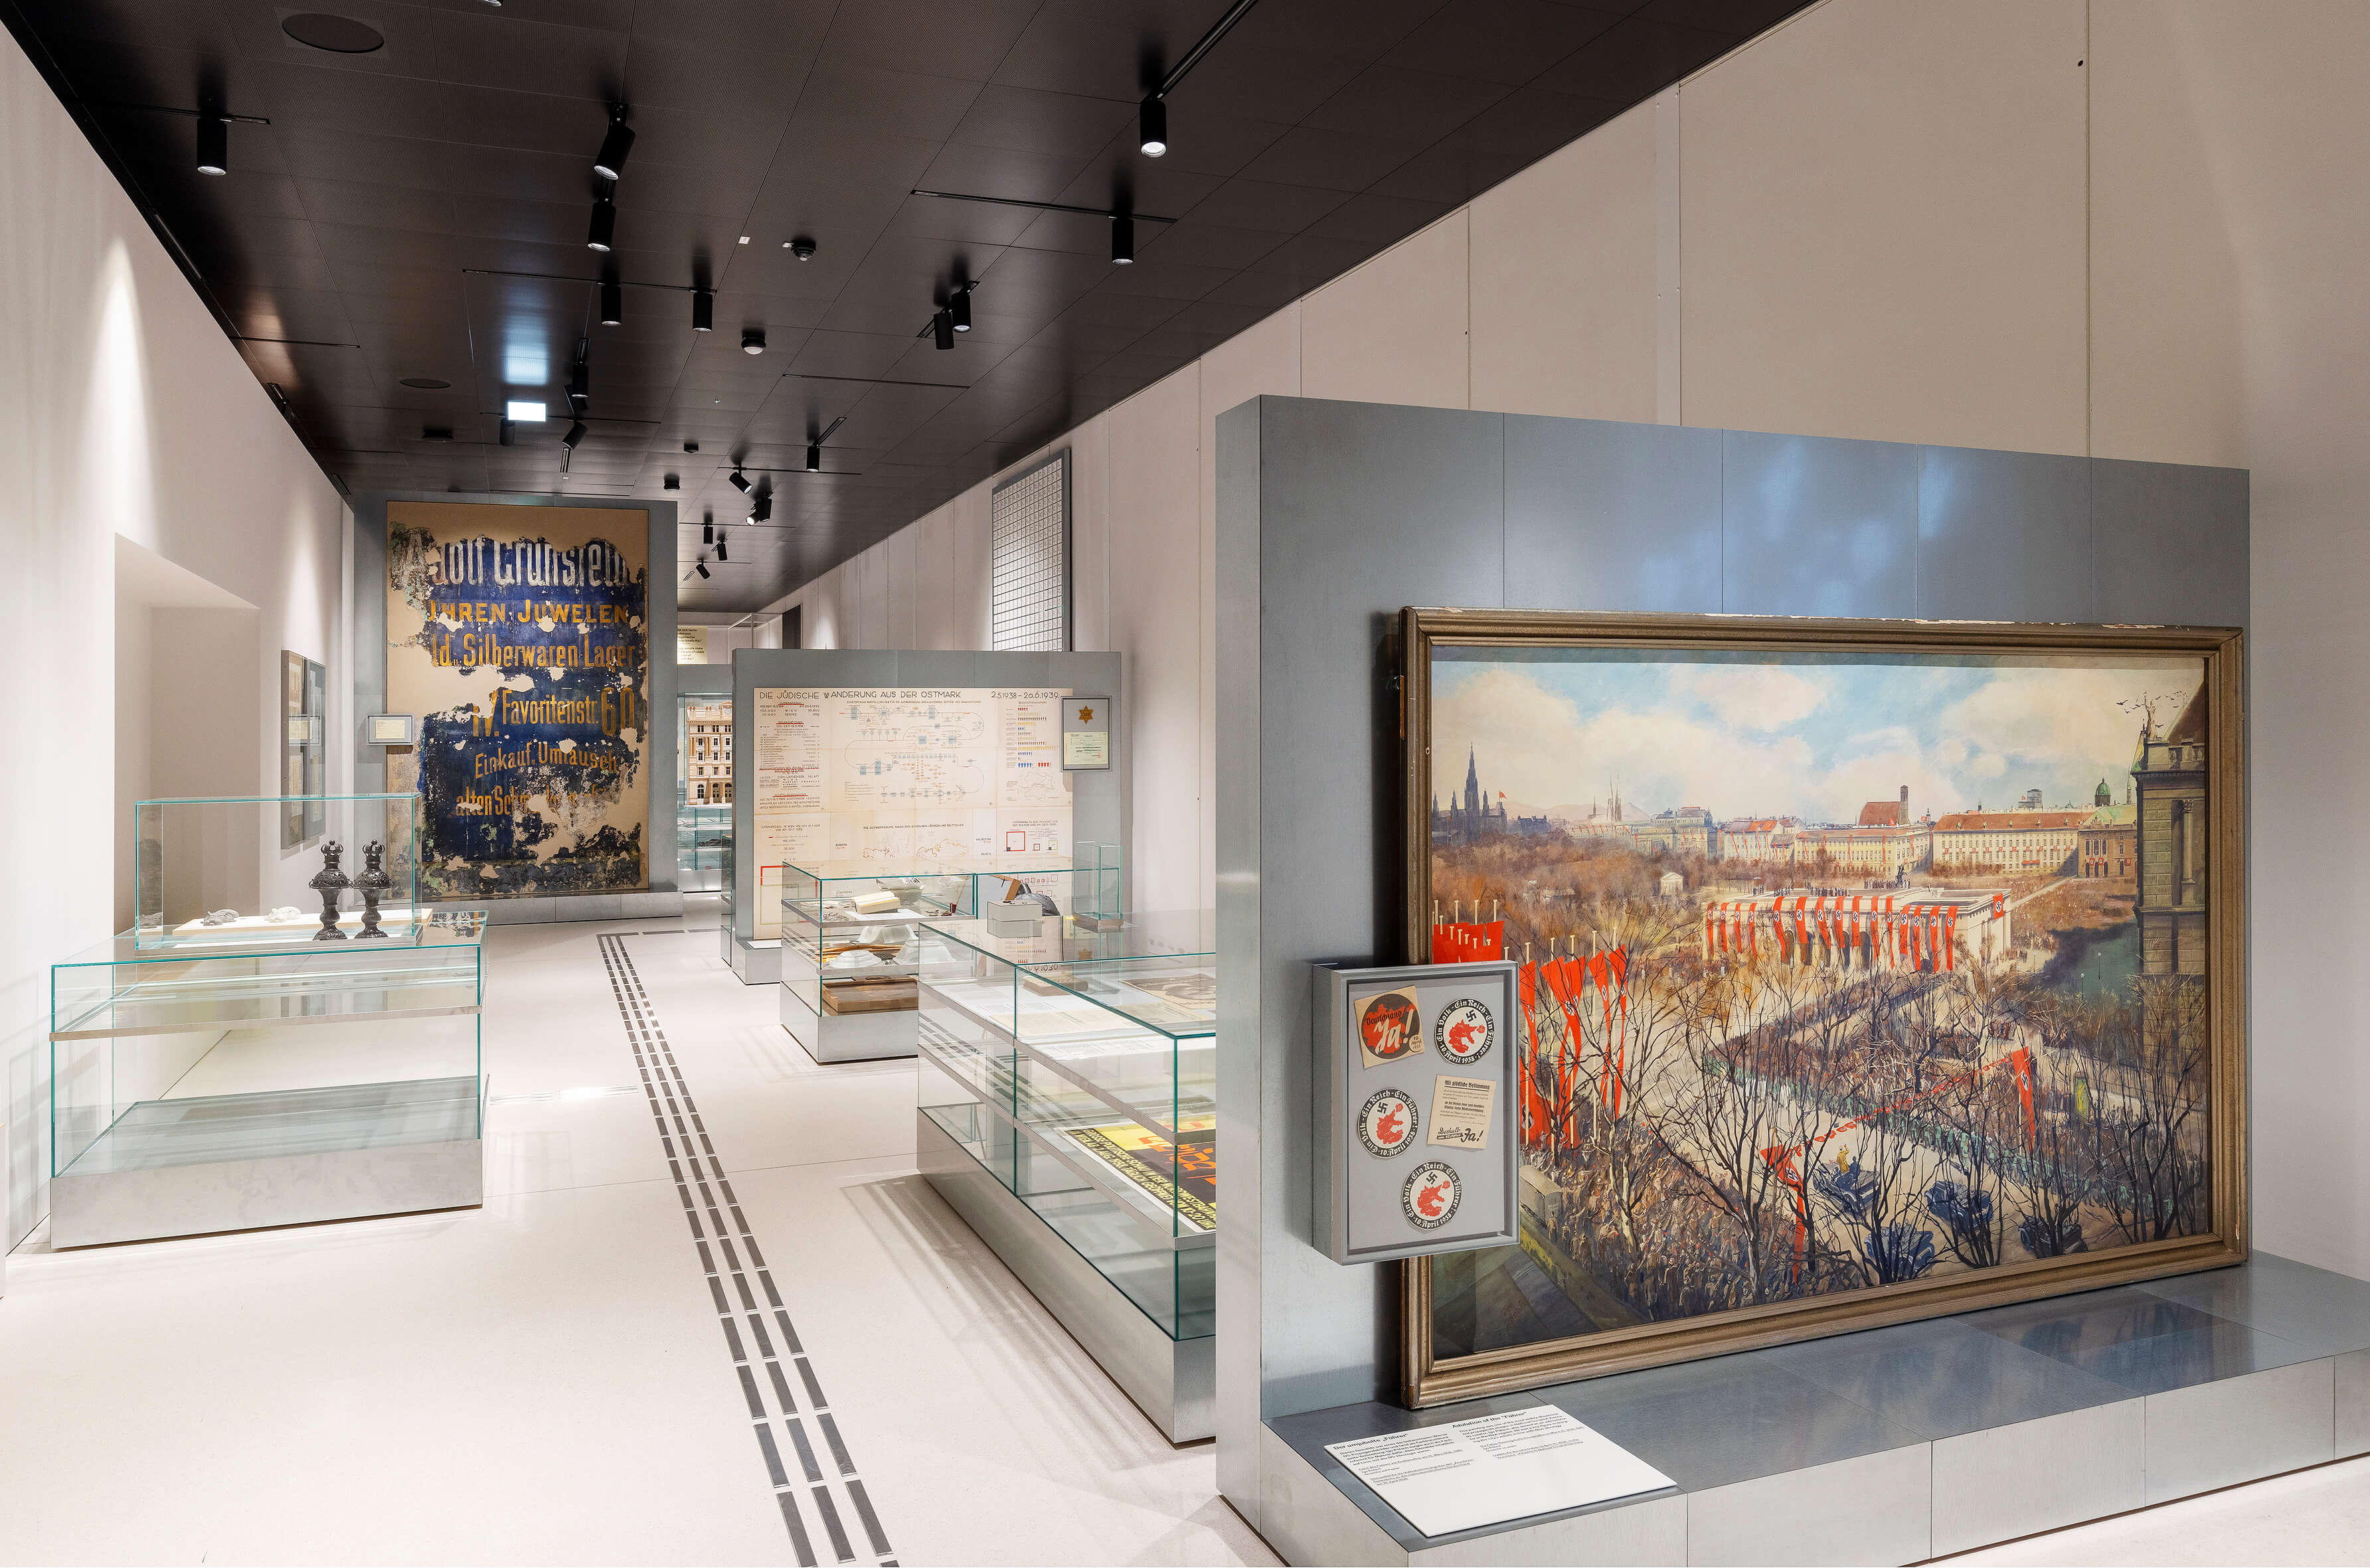 Blick auf das Kapitel zum Nationalsozialismus, im Hintergrund links ist die Wandmalerei des Uhren- und Juweliergeschäfts von Adolf Grünsfeld zu sehen. Foto: Lisa Rastl 